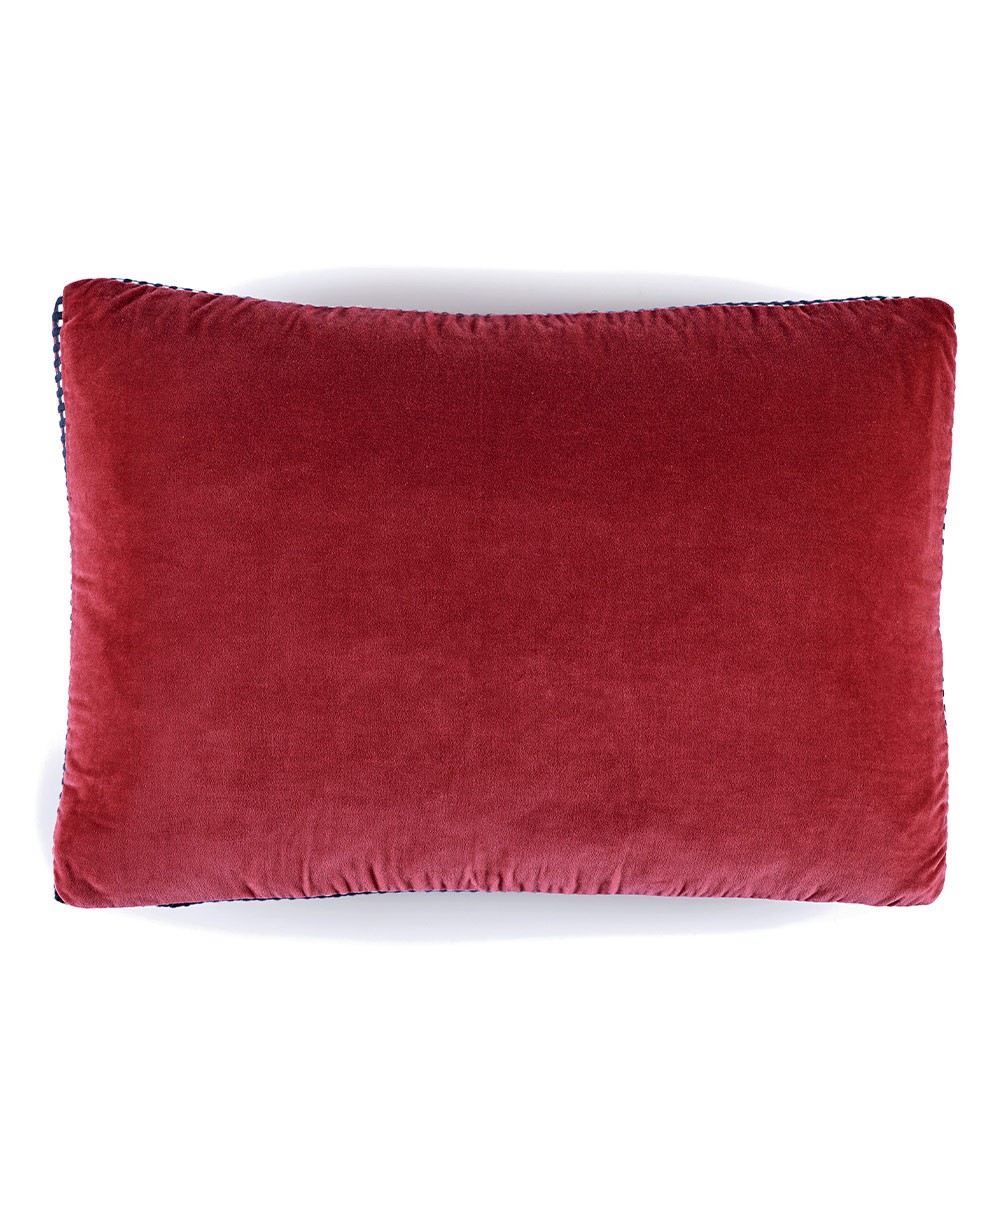 Velvet cushion Athena with piping finish